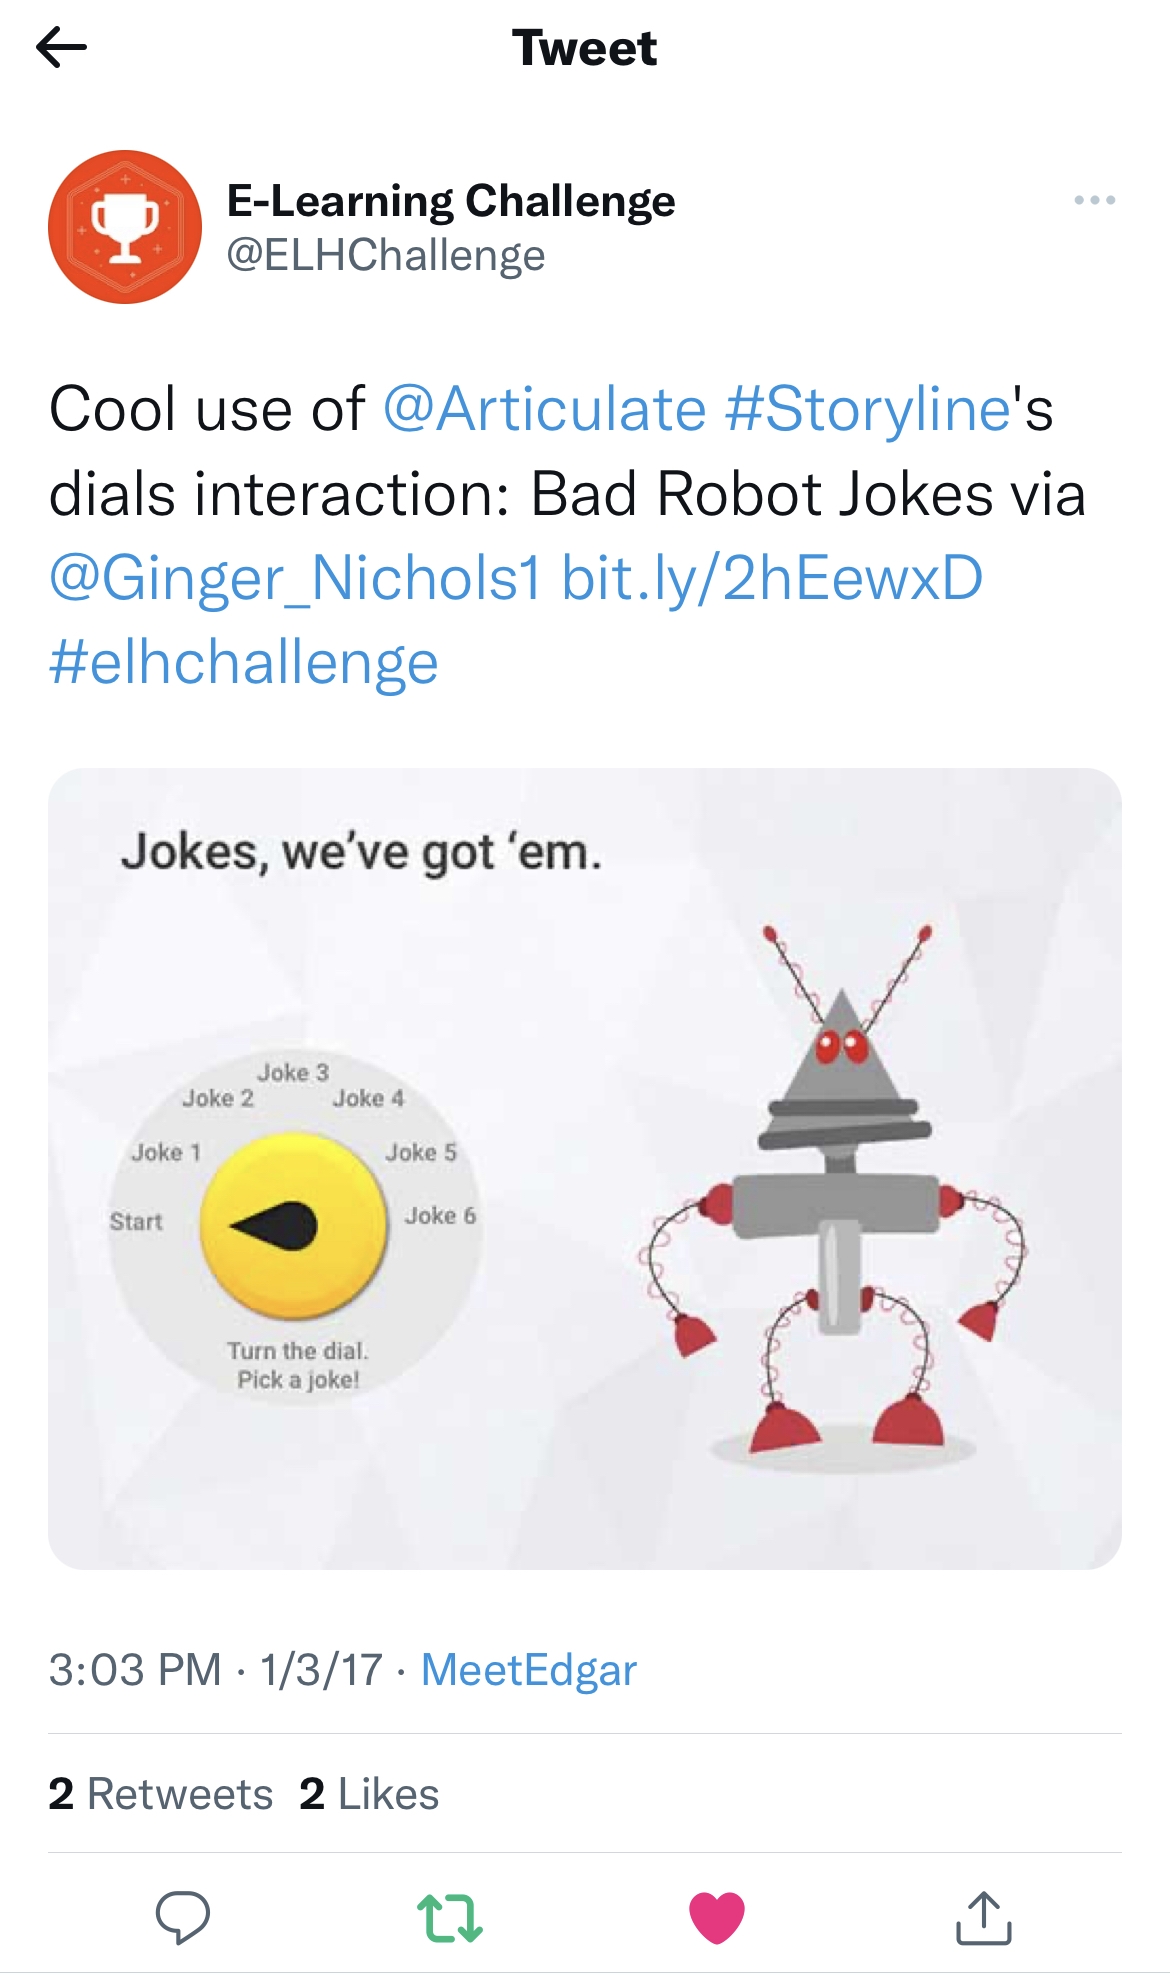 Bad Robot Jokes on the Articulate @ELHChallenge twitter account.